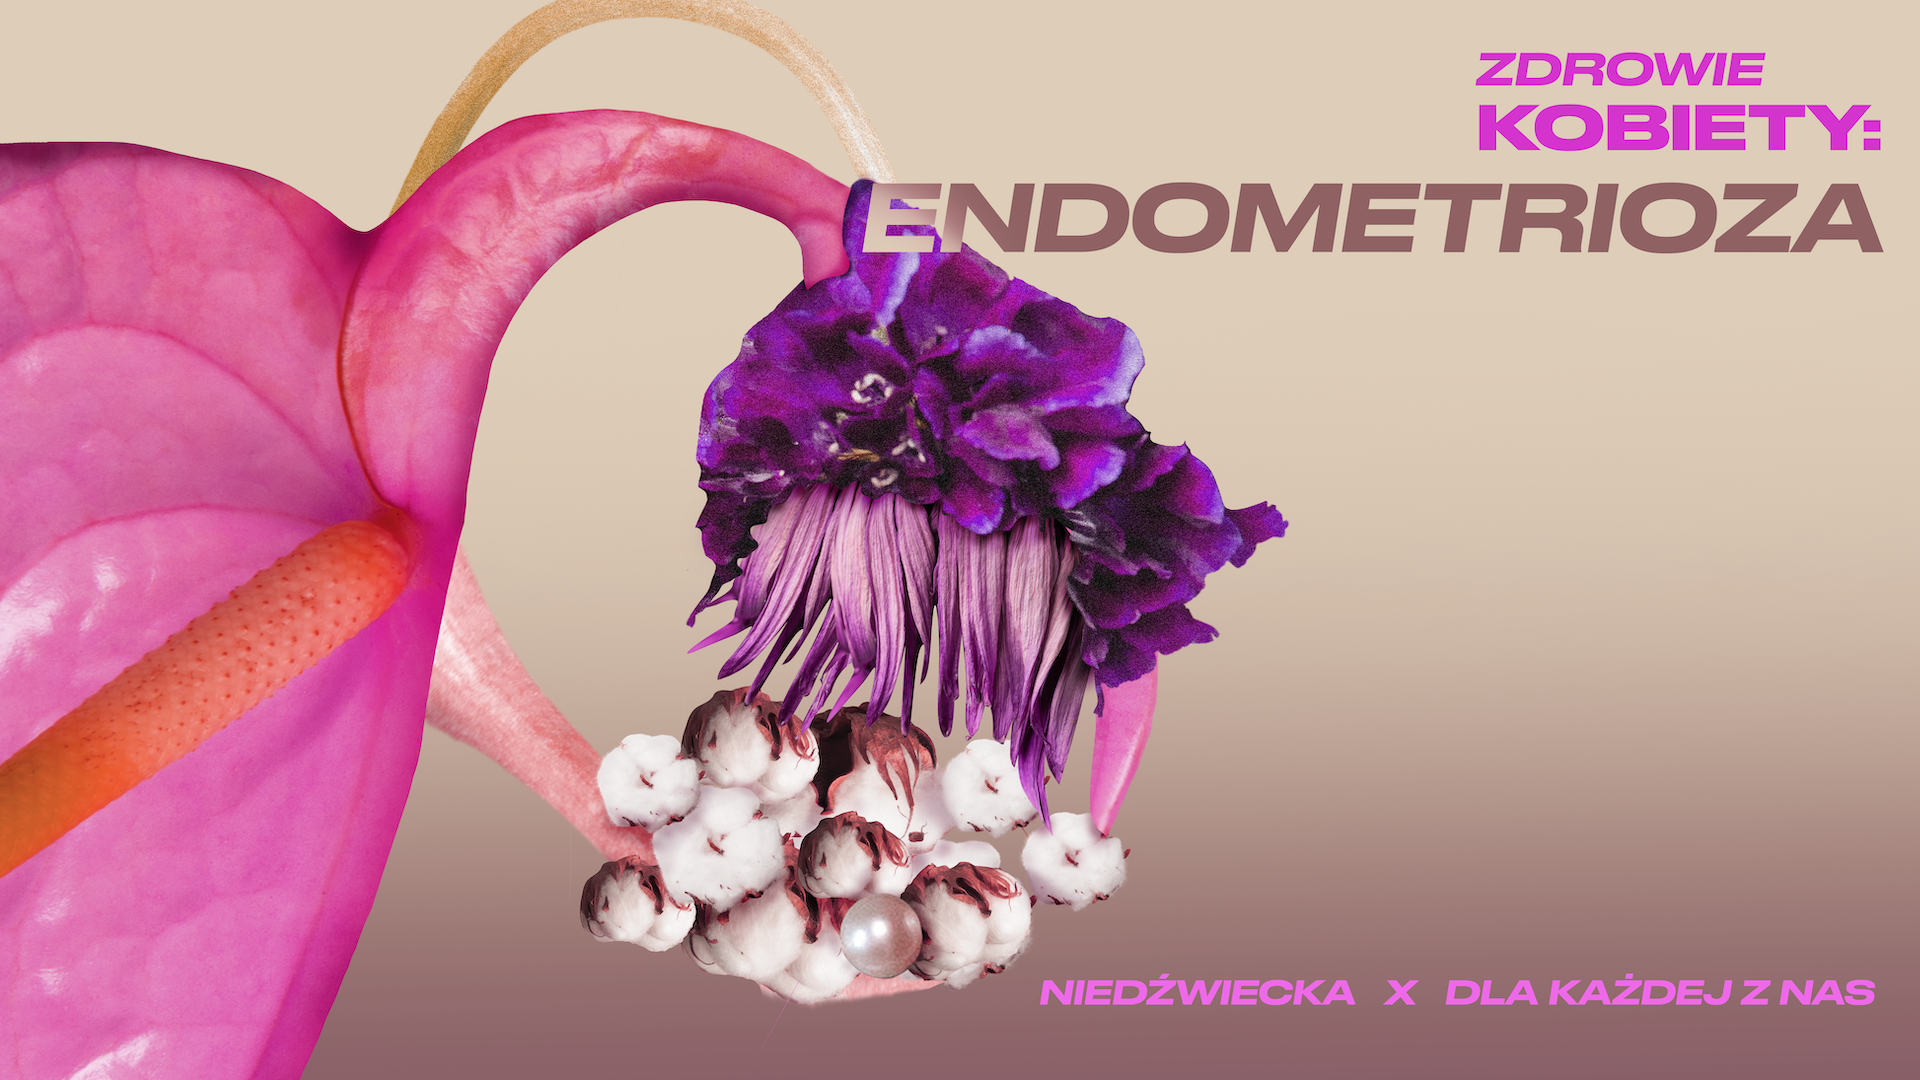 Endometrioza – Zdrowie Kobiety